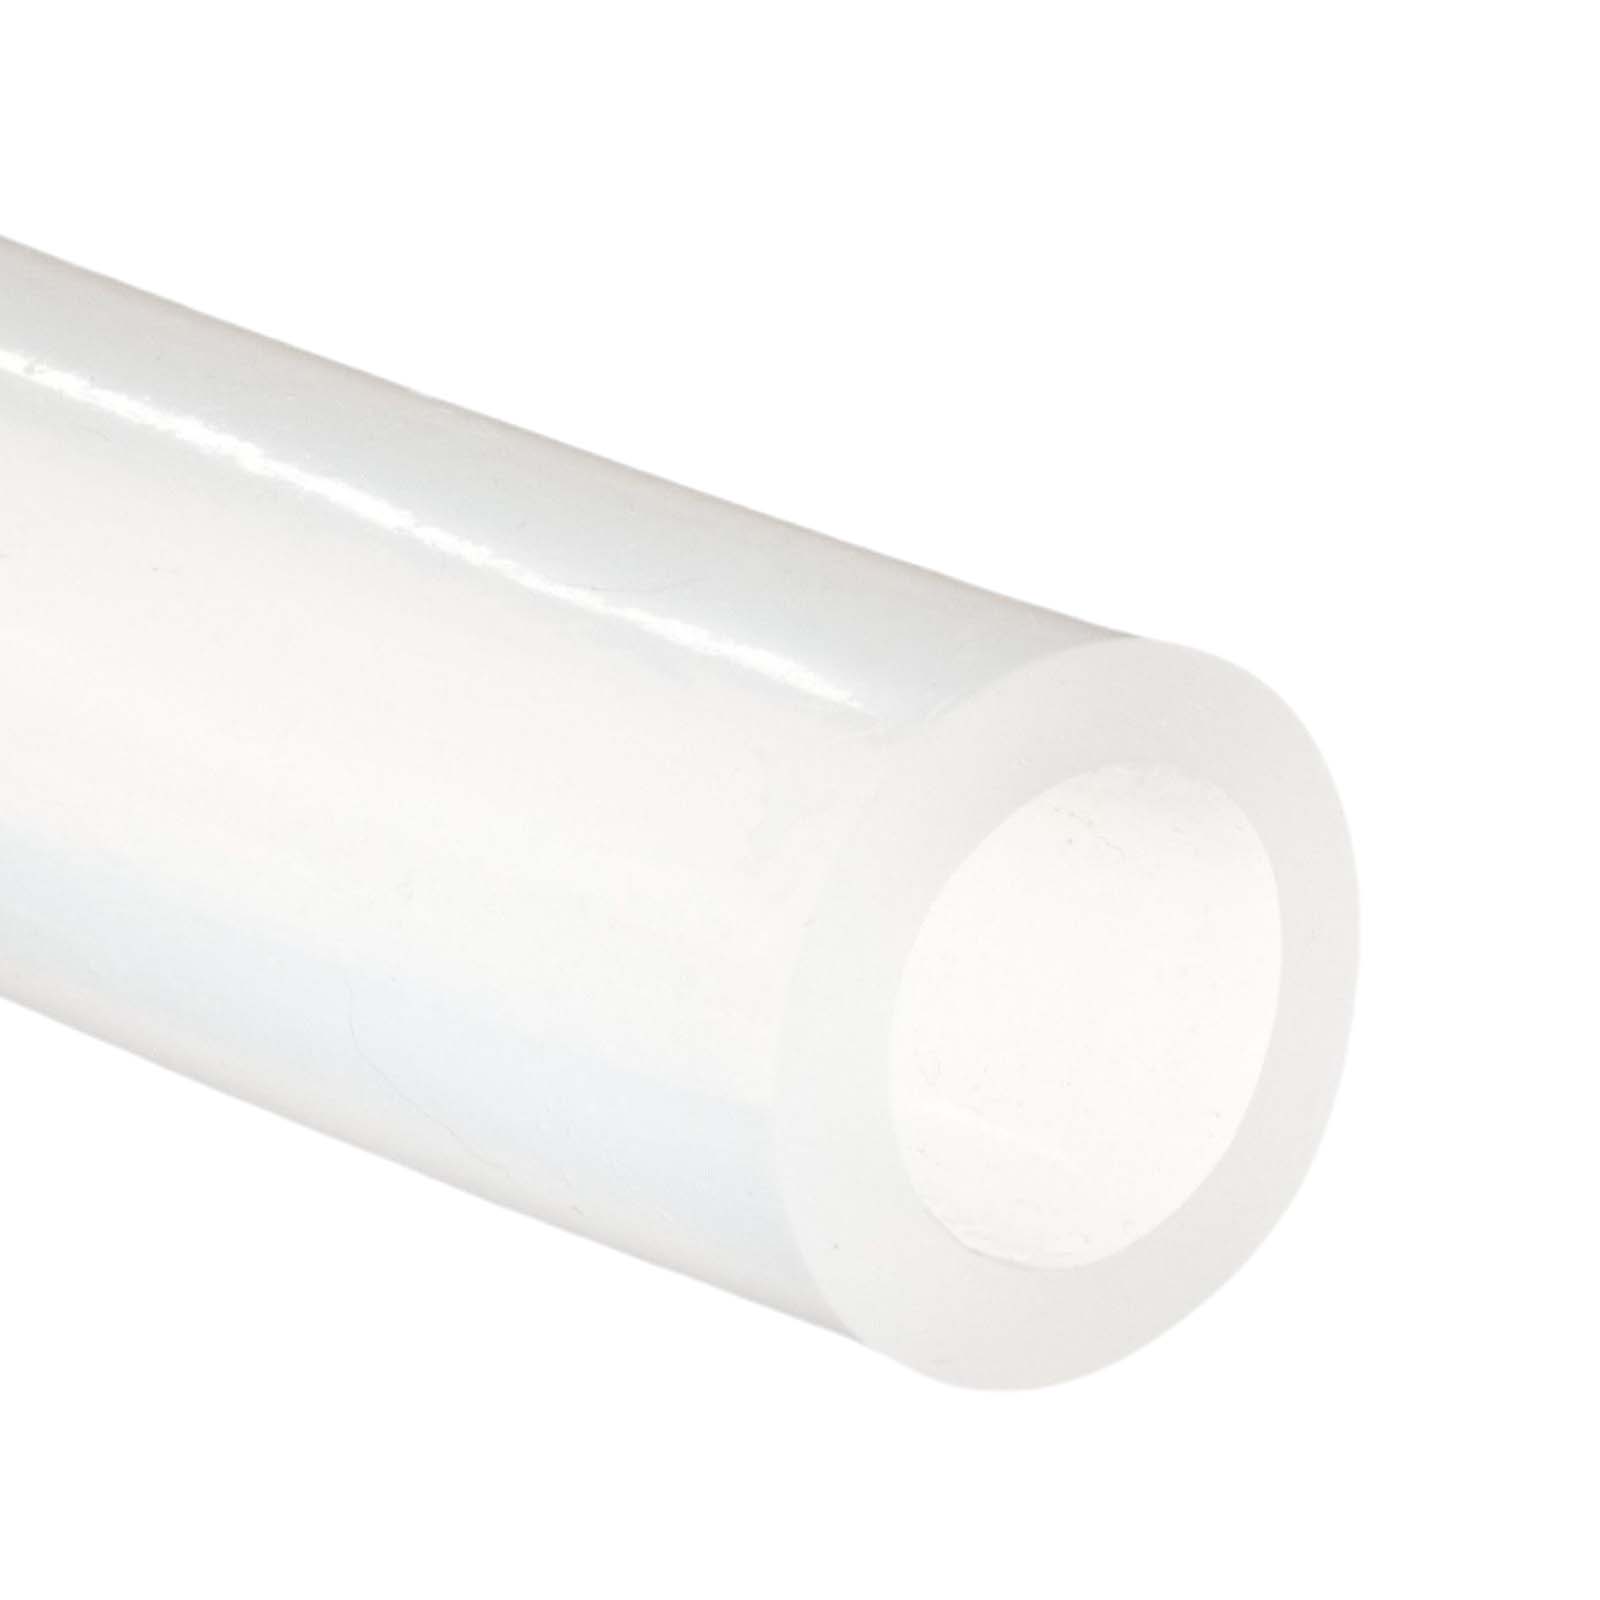 Silikonschlauch FDA Lebensmittel Ø 16x20 mm transparent Schlauch Milchschlauch Wasserschlauch 